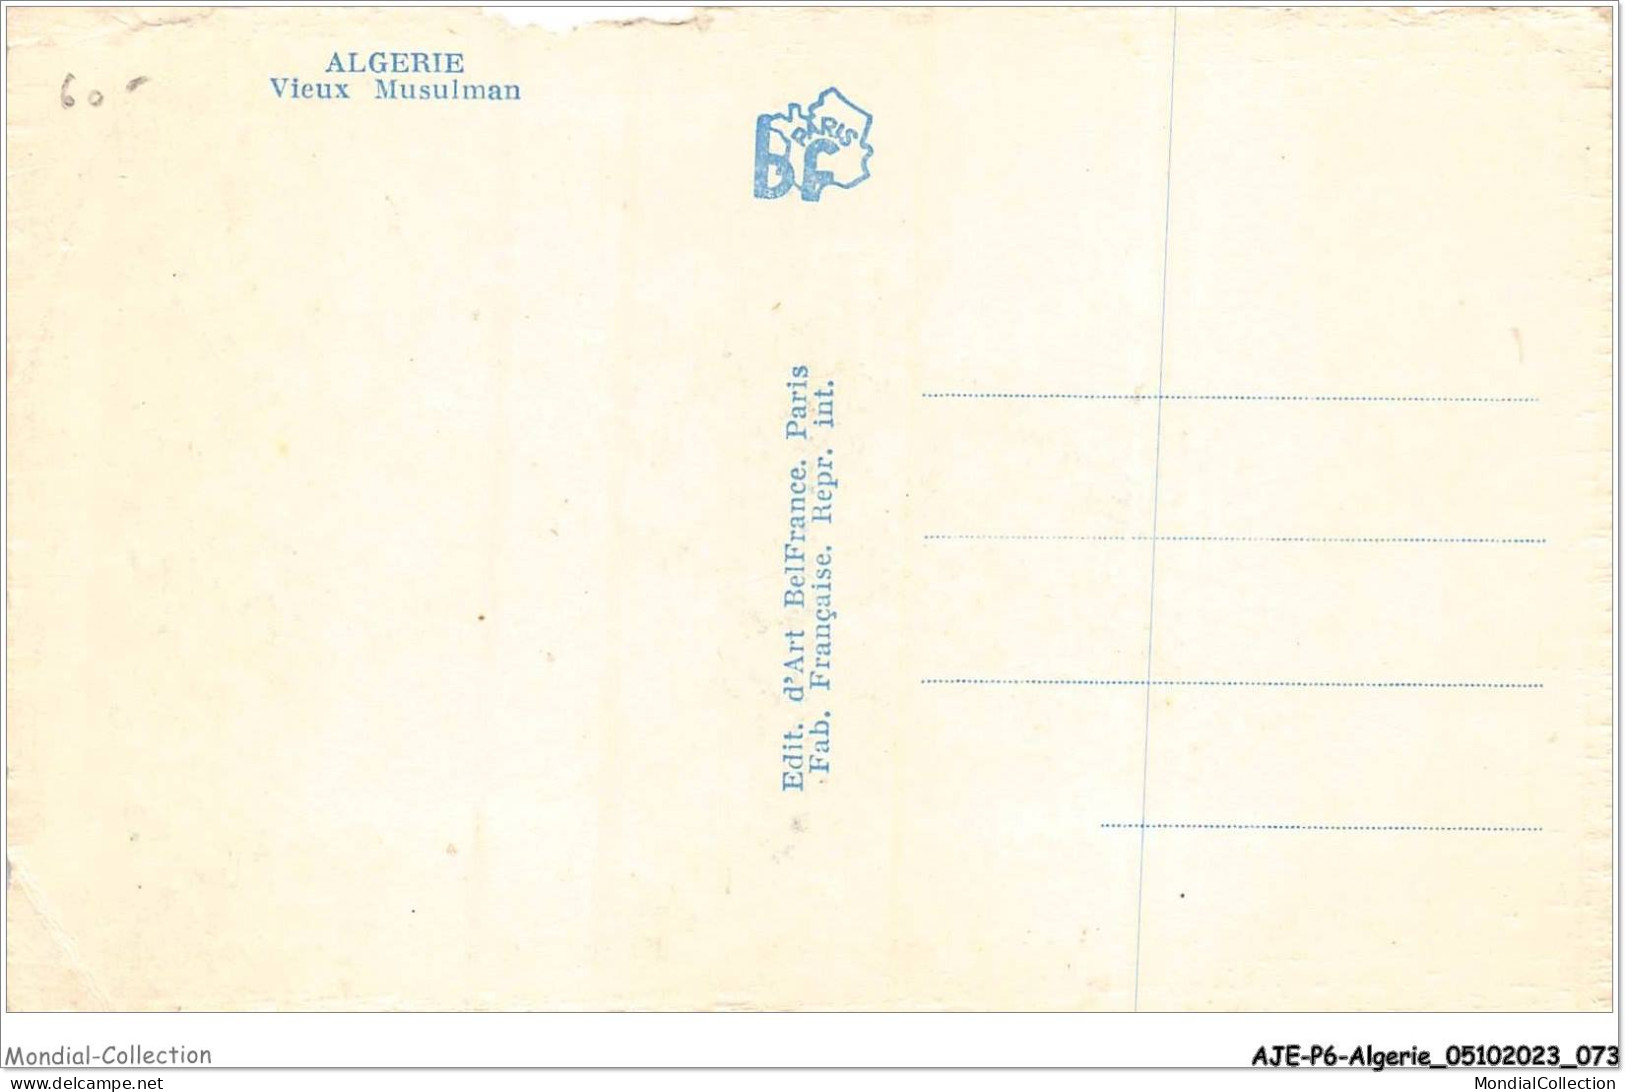 AJEP6-ALGERIE-0543 - ALGERIE - Vieux Musulman - Hommes